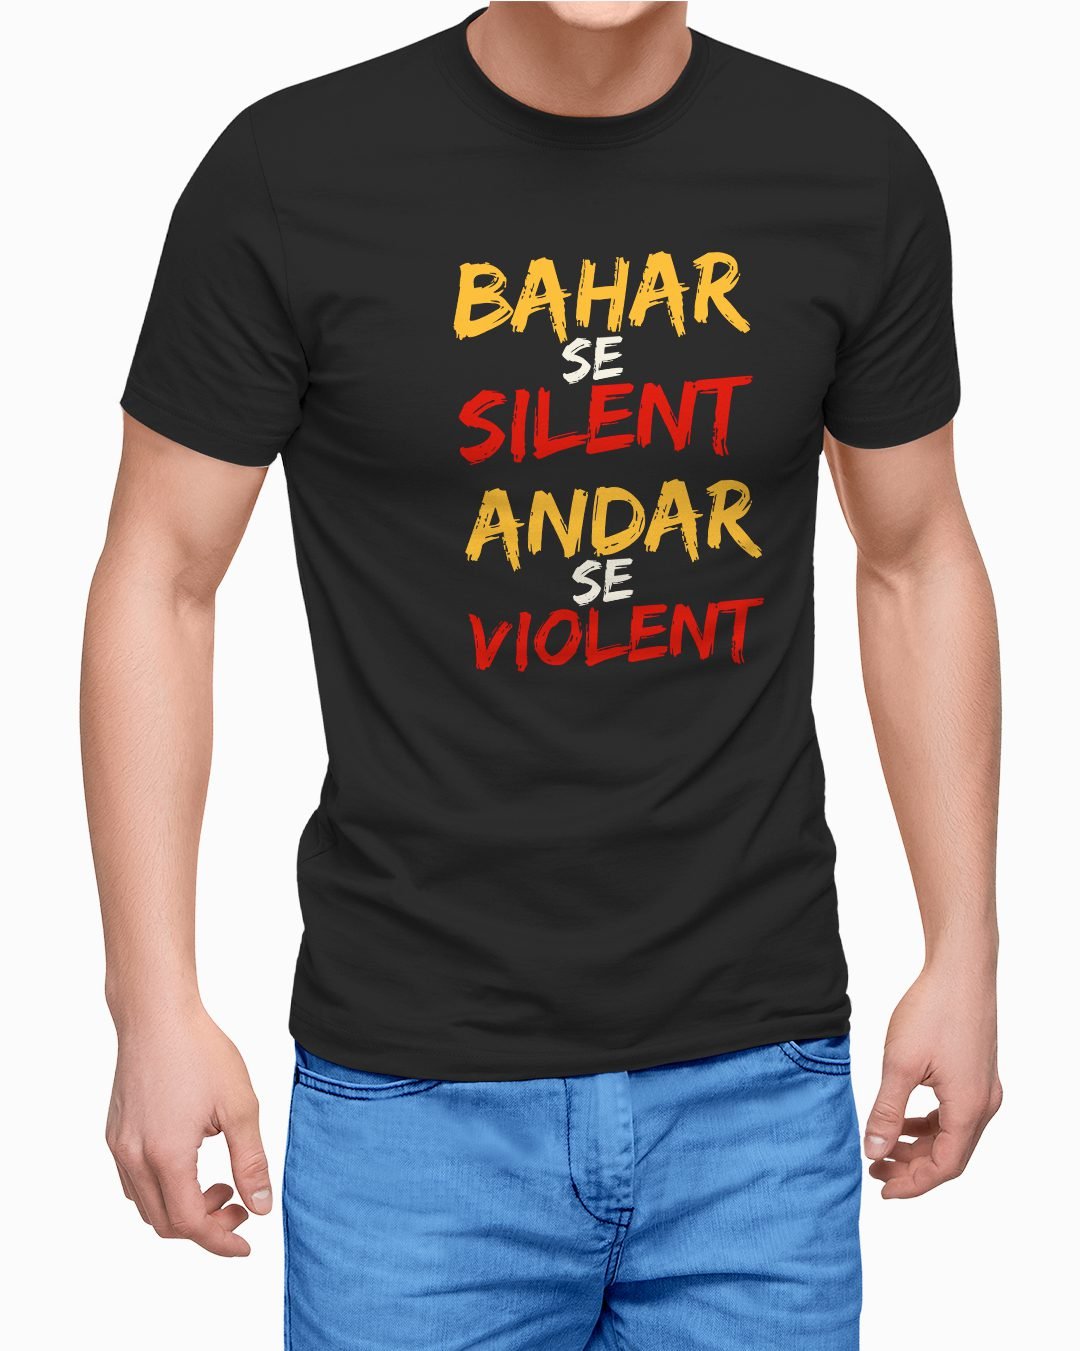 Bahar Se Silent Andar Se Violent Printed T-Shirt for men